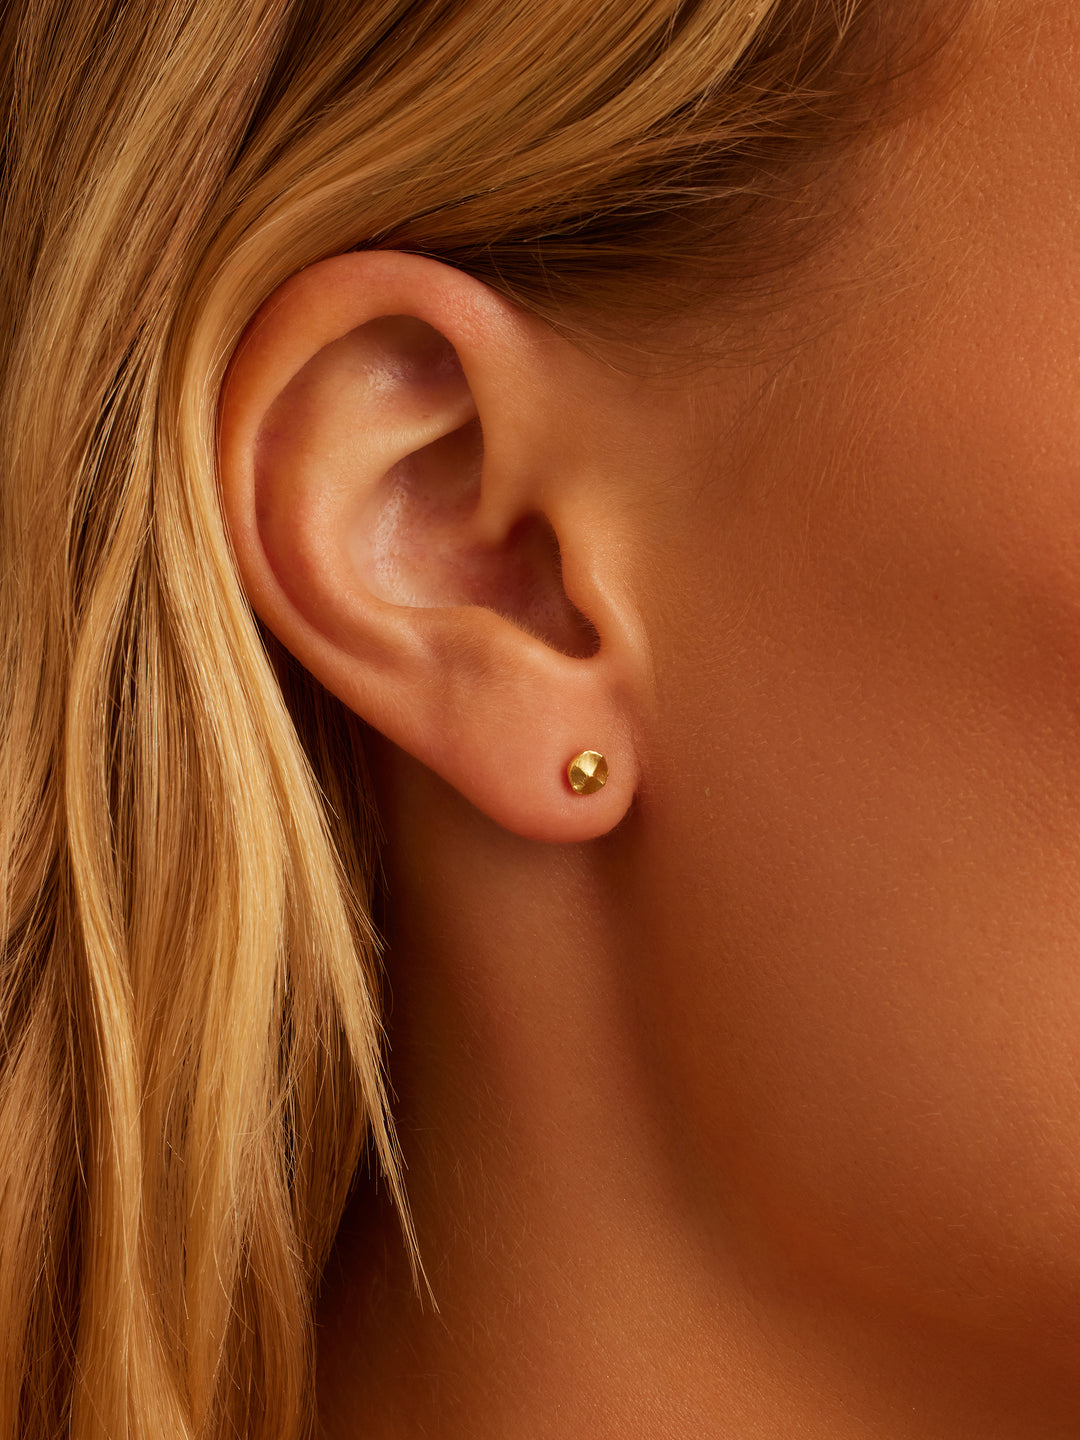 Rose Gold Plated V-Sign Stud Earrings